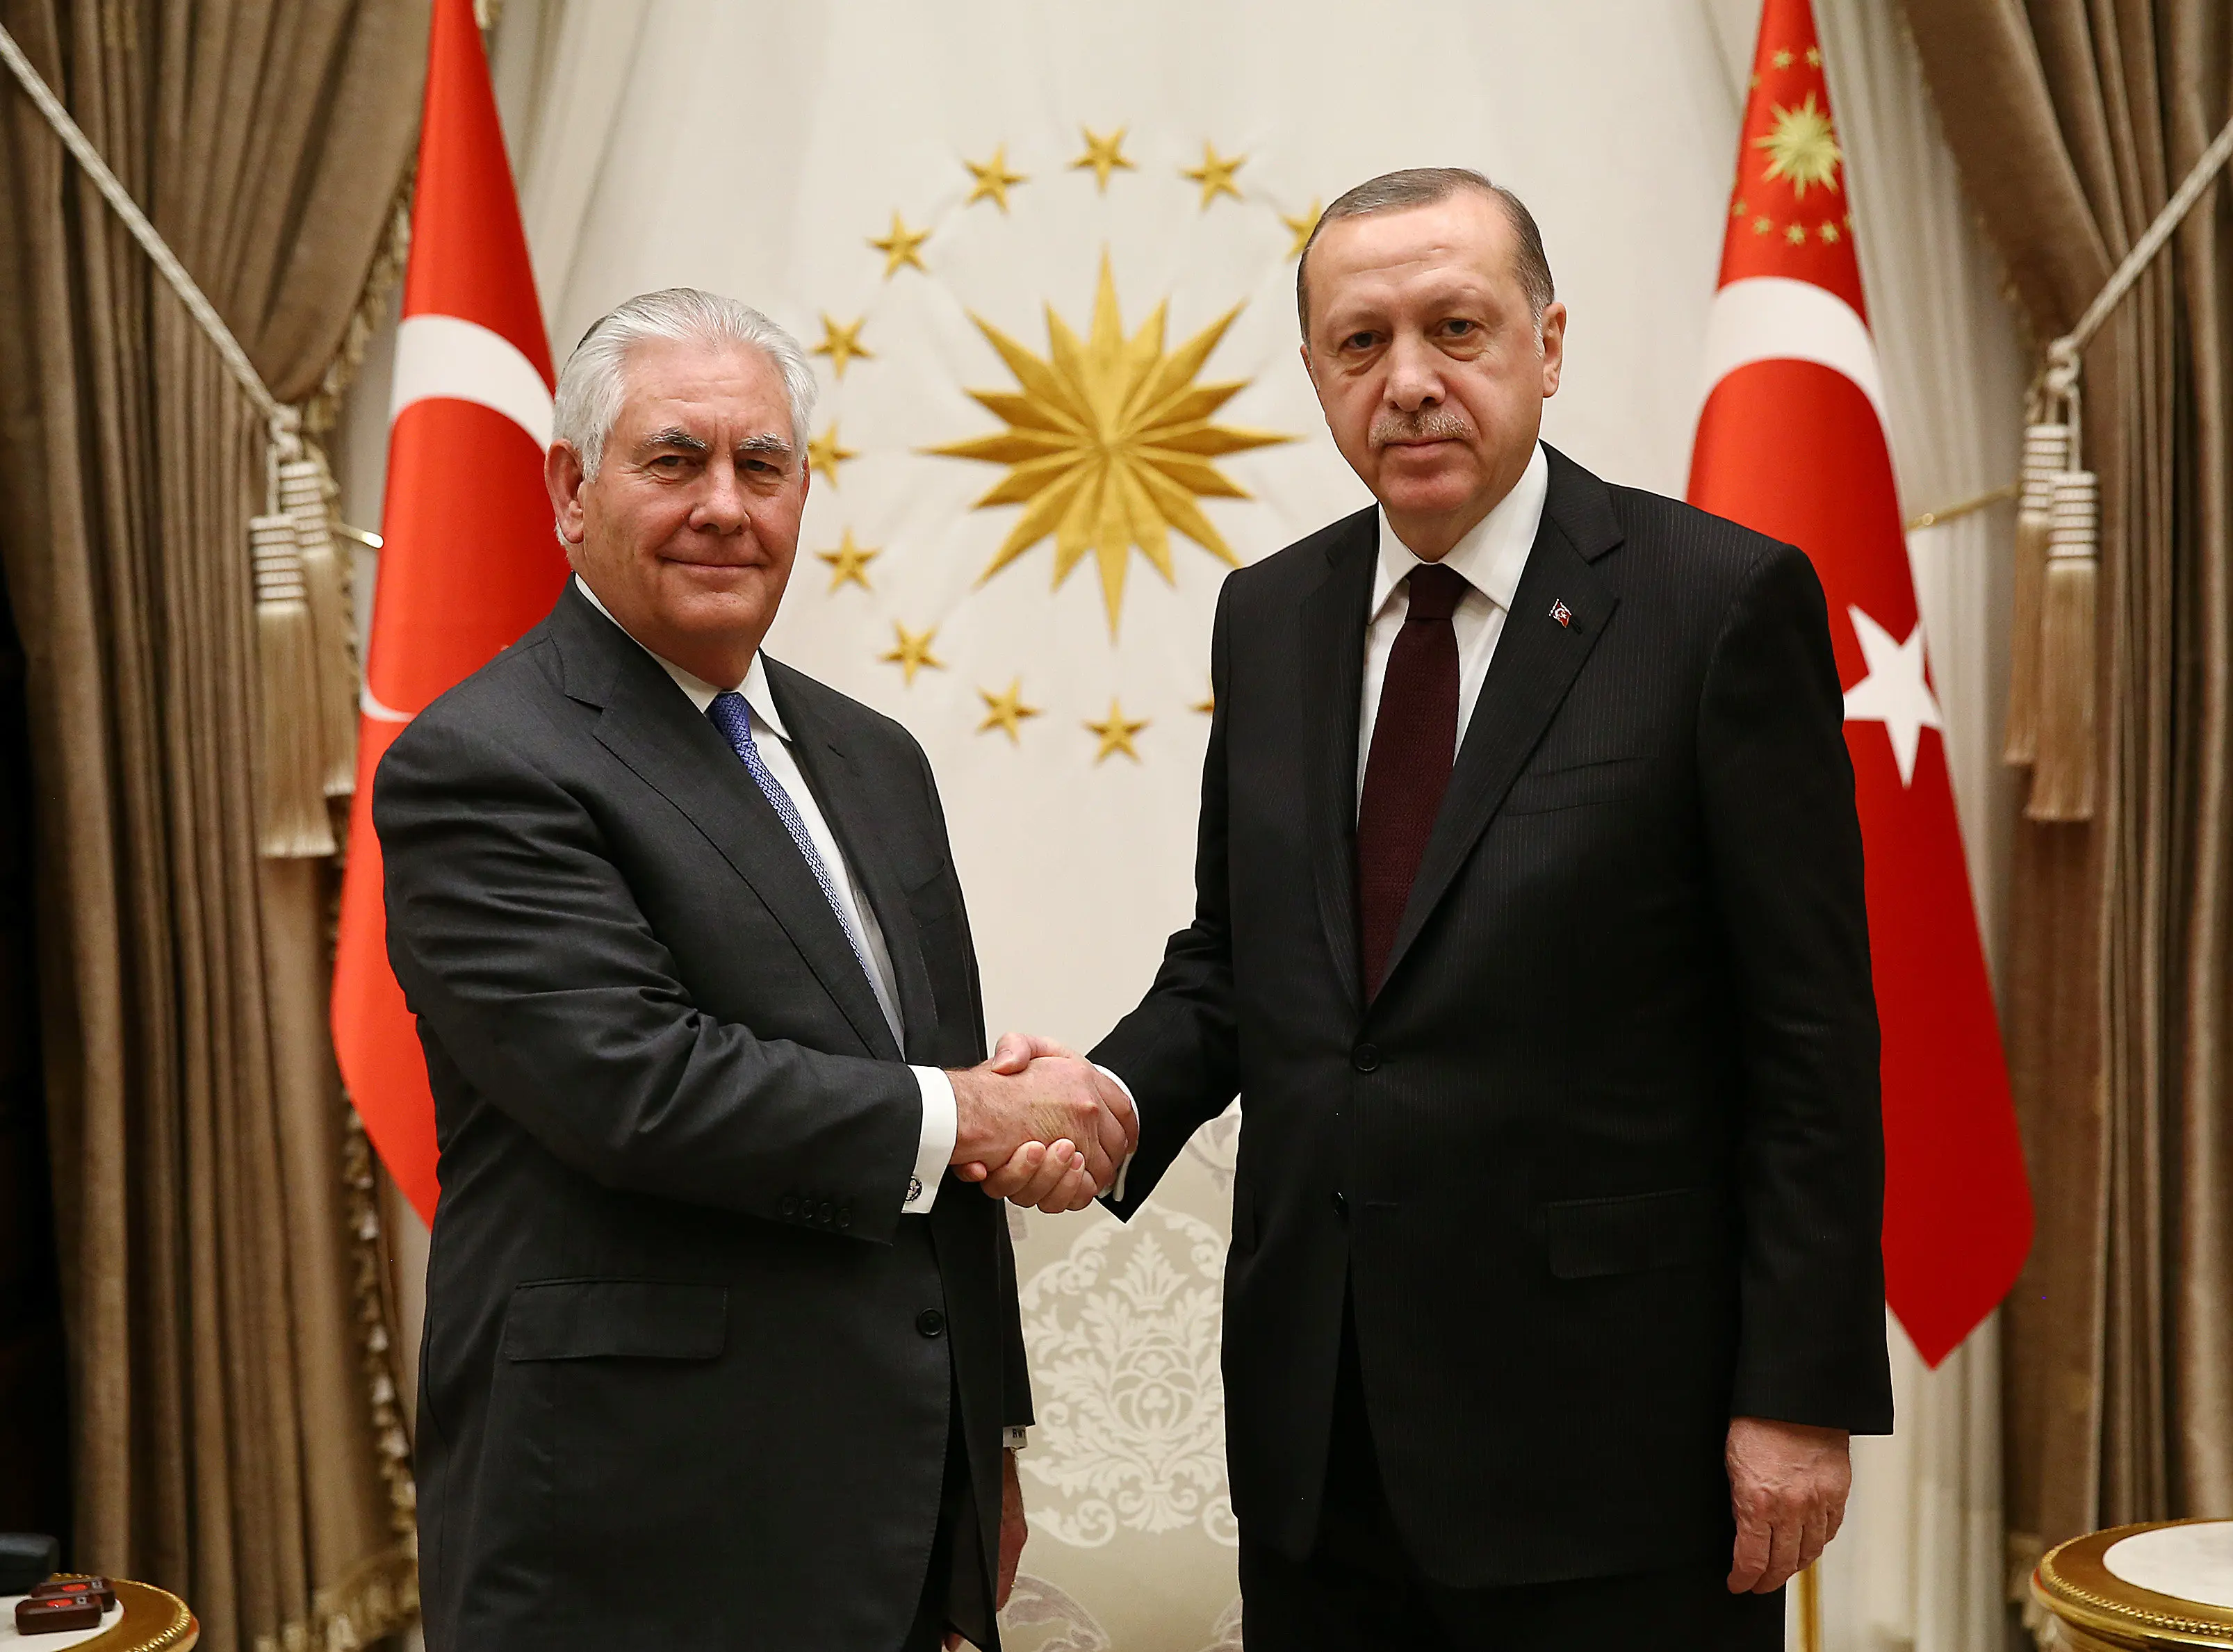 נשיא טורקיה ארדואן עם שר החוץ של ארה"ב טילרסון באנקרה, 15 בפברואר 2018